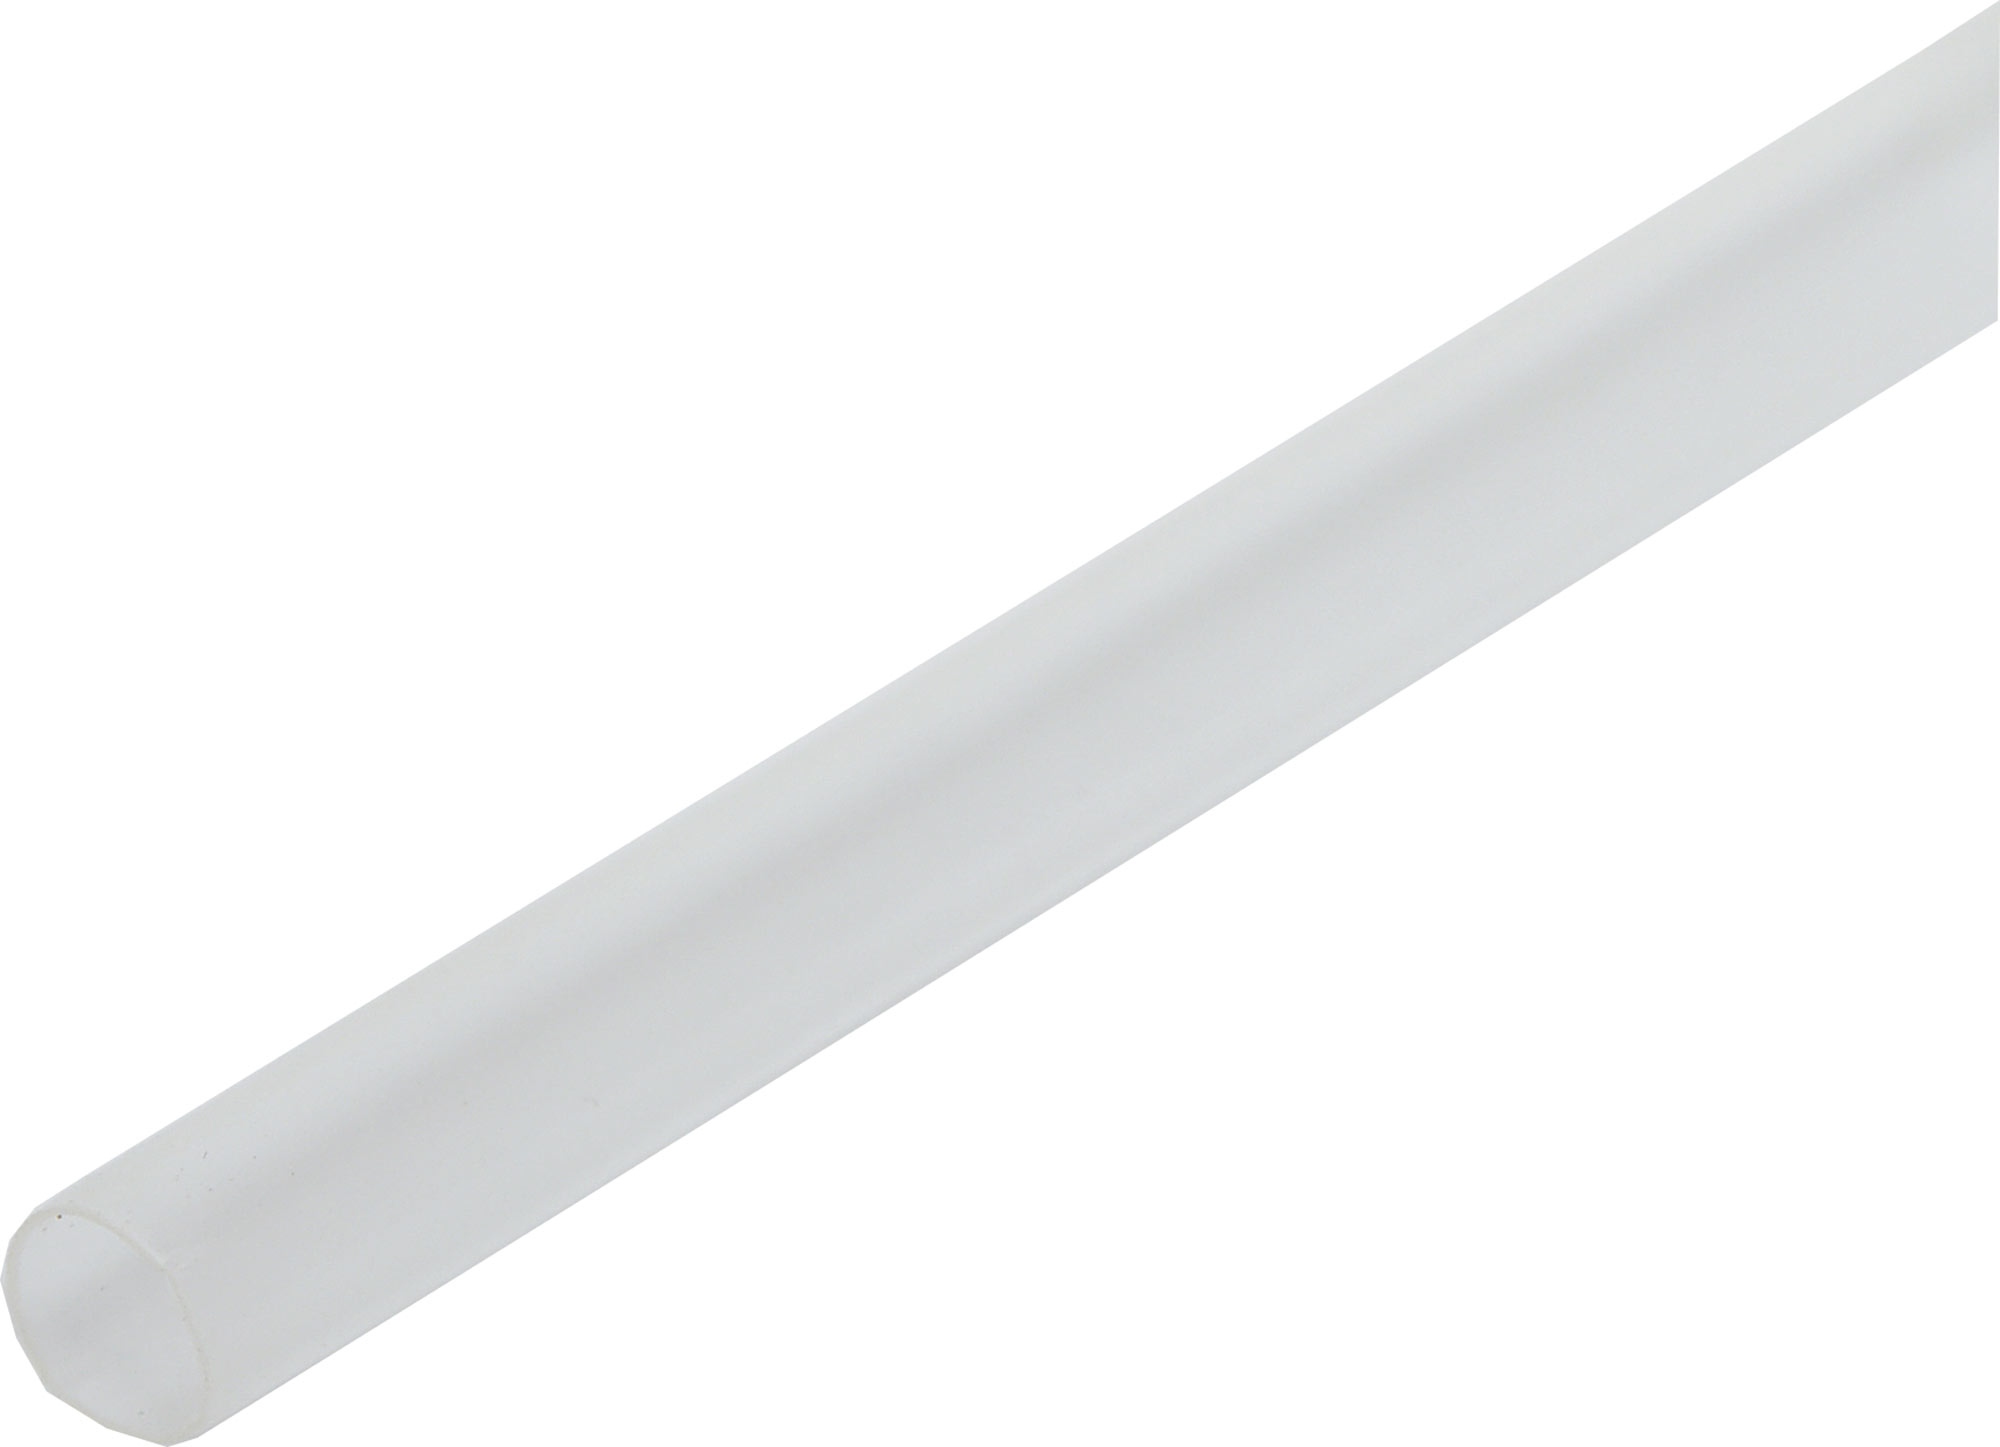 Clear 5mm Heat Shrink Tubing 1.0m Length | eBay 5mm Clear Heat Shrink Tubing